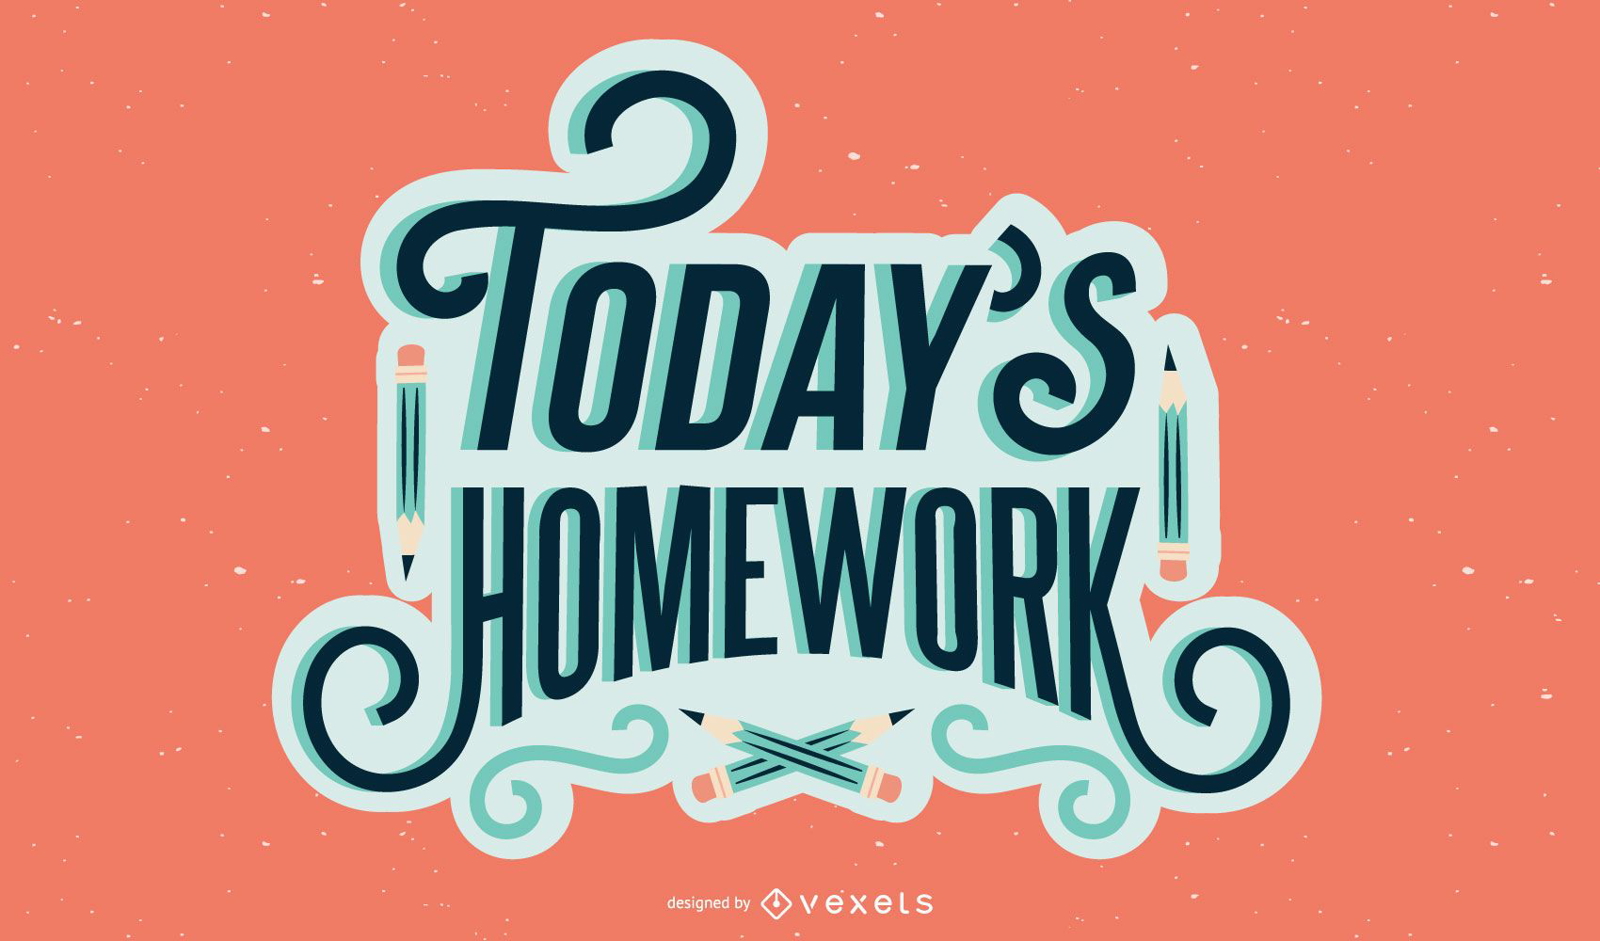 Today's homework lettering design